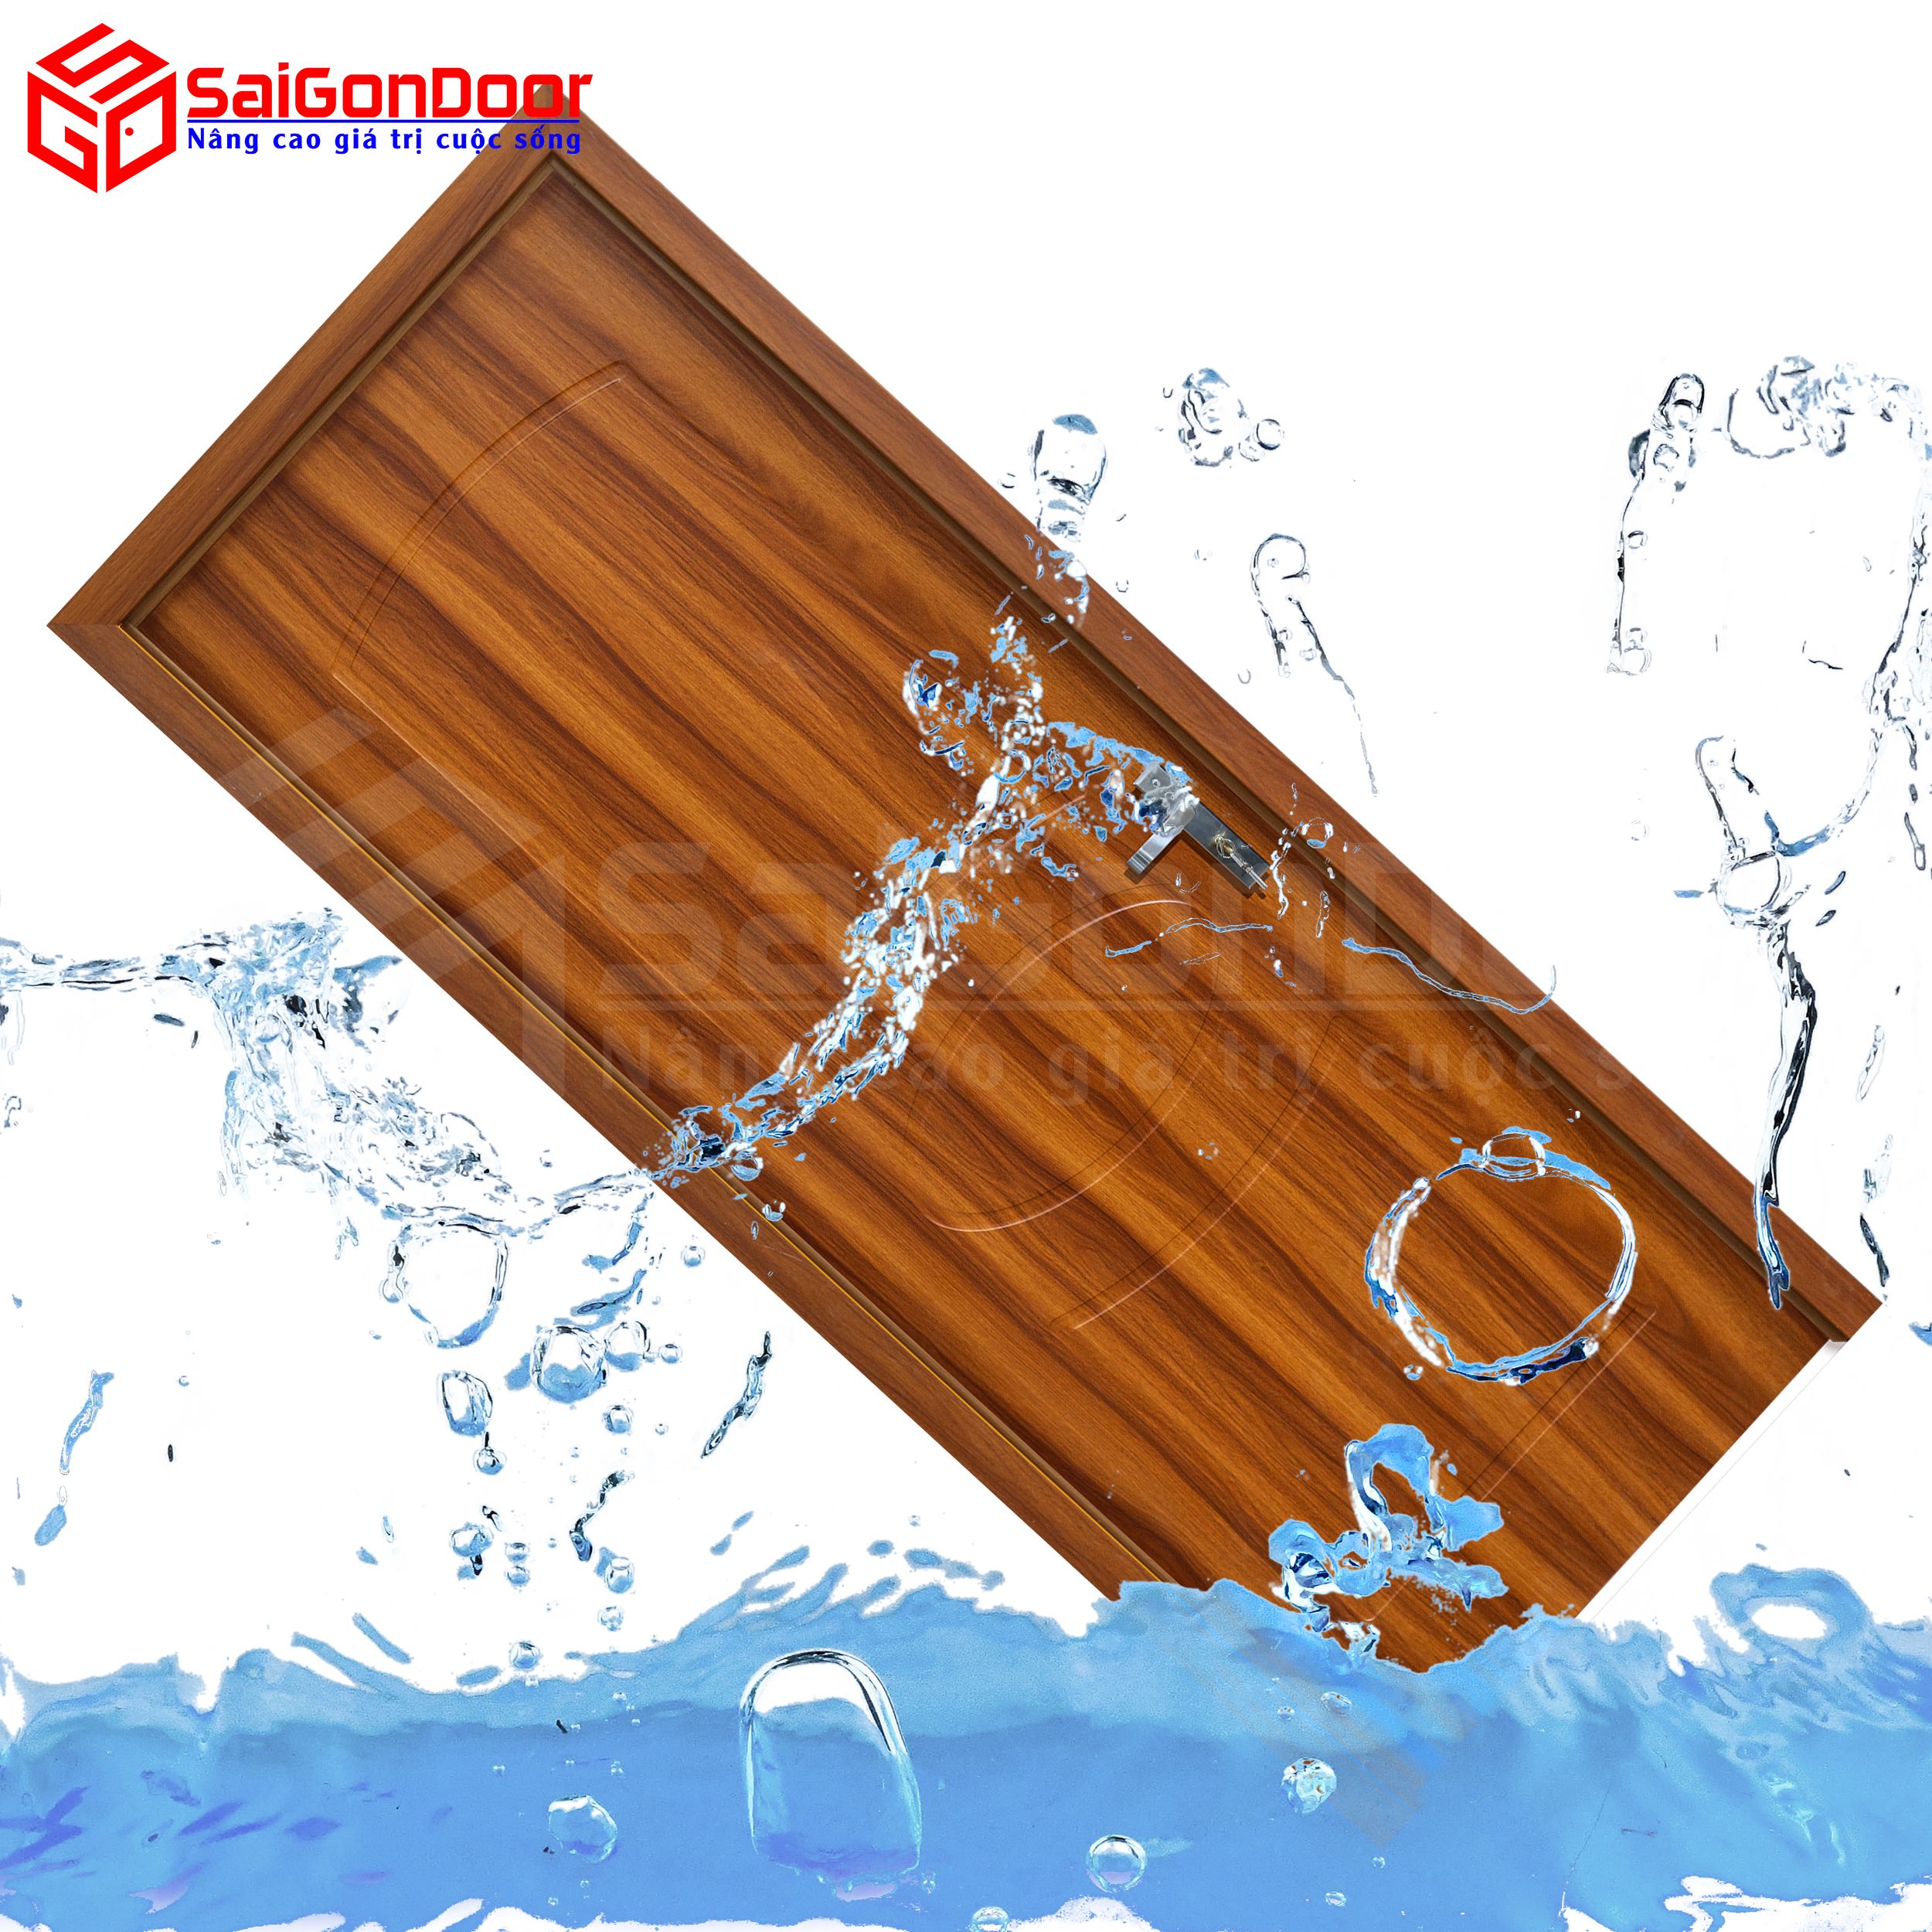 Cửa gỗ chống nước là giải pháp tối ưu vừa bền, đẹp mà sử dụng hiệu quả với khả năng chống nước dùng cho phòng tắm